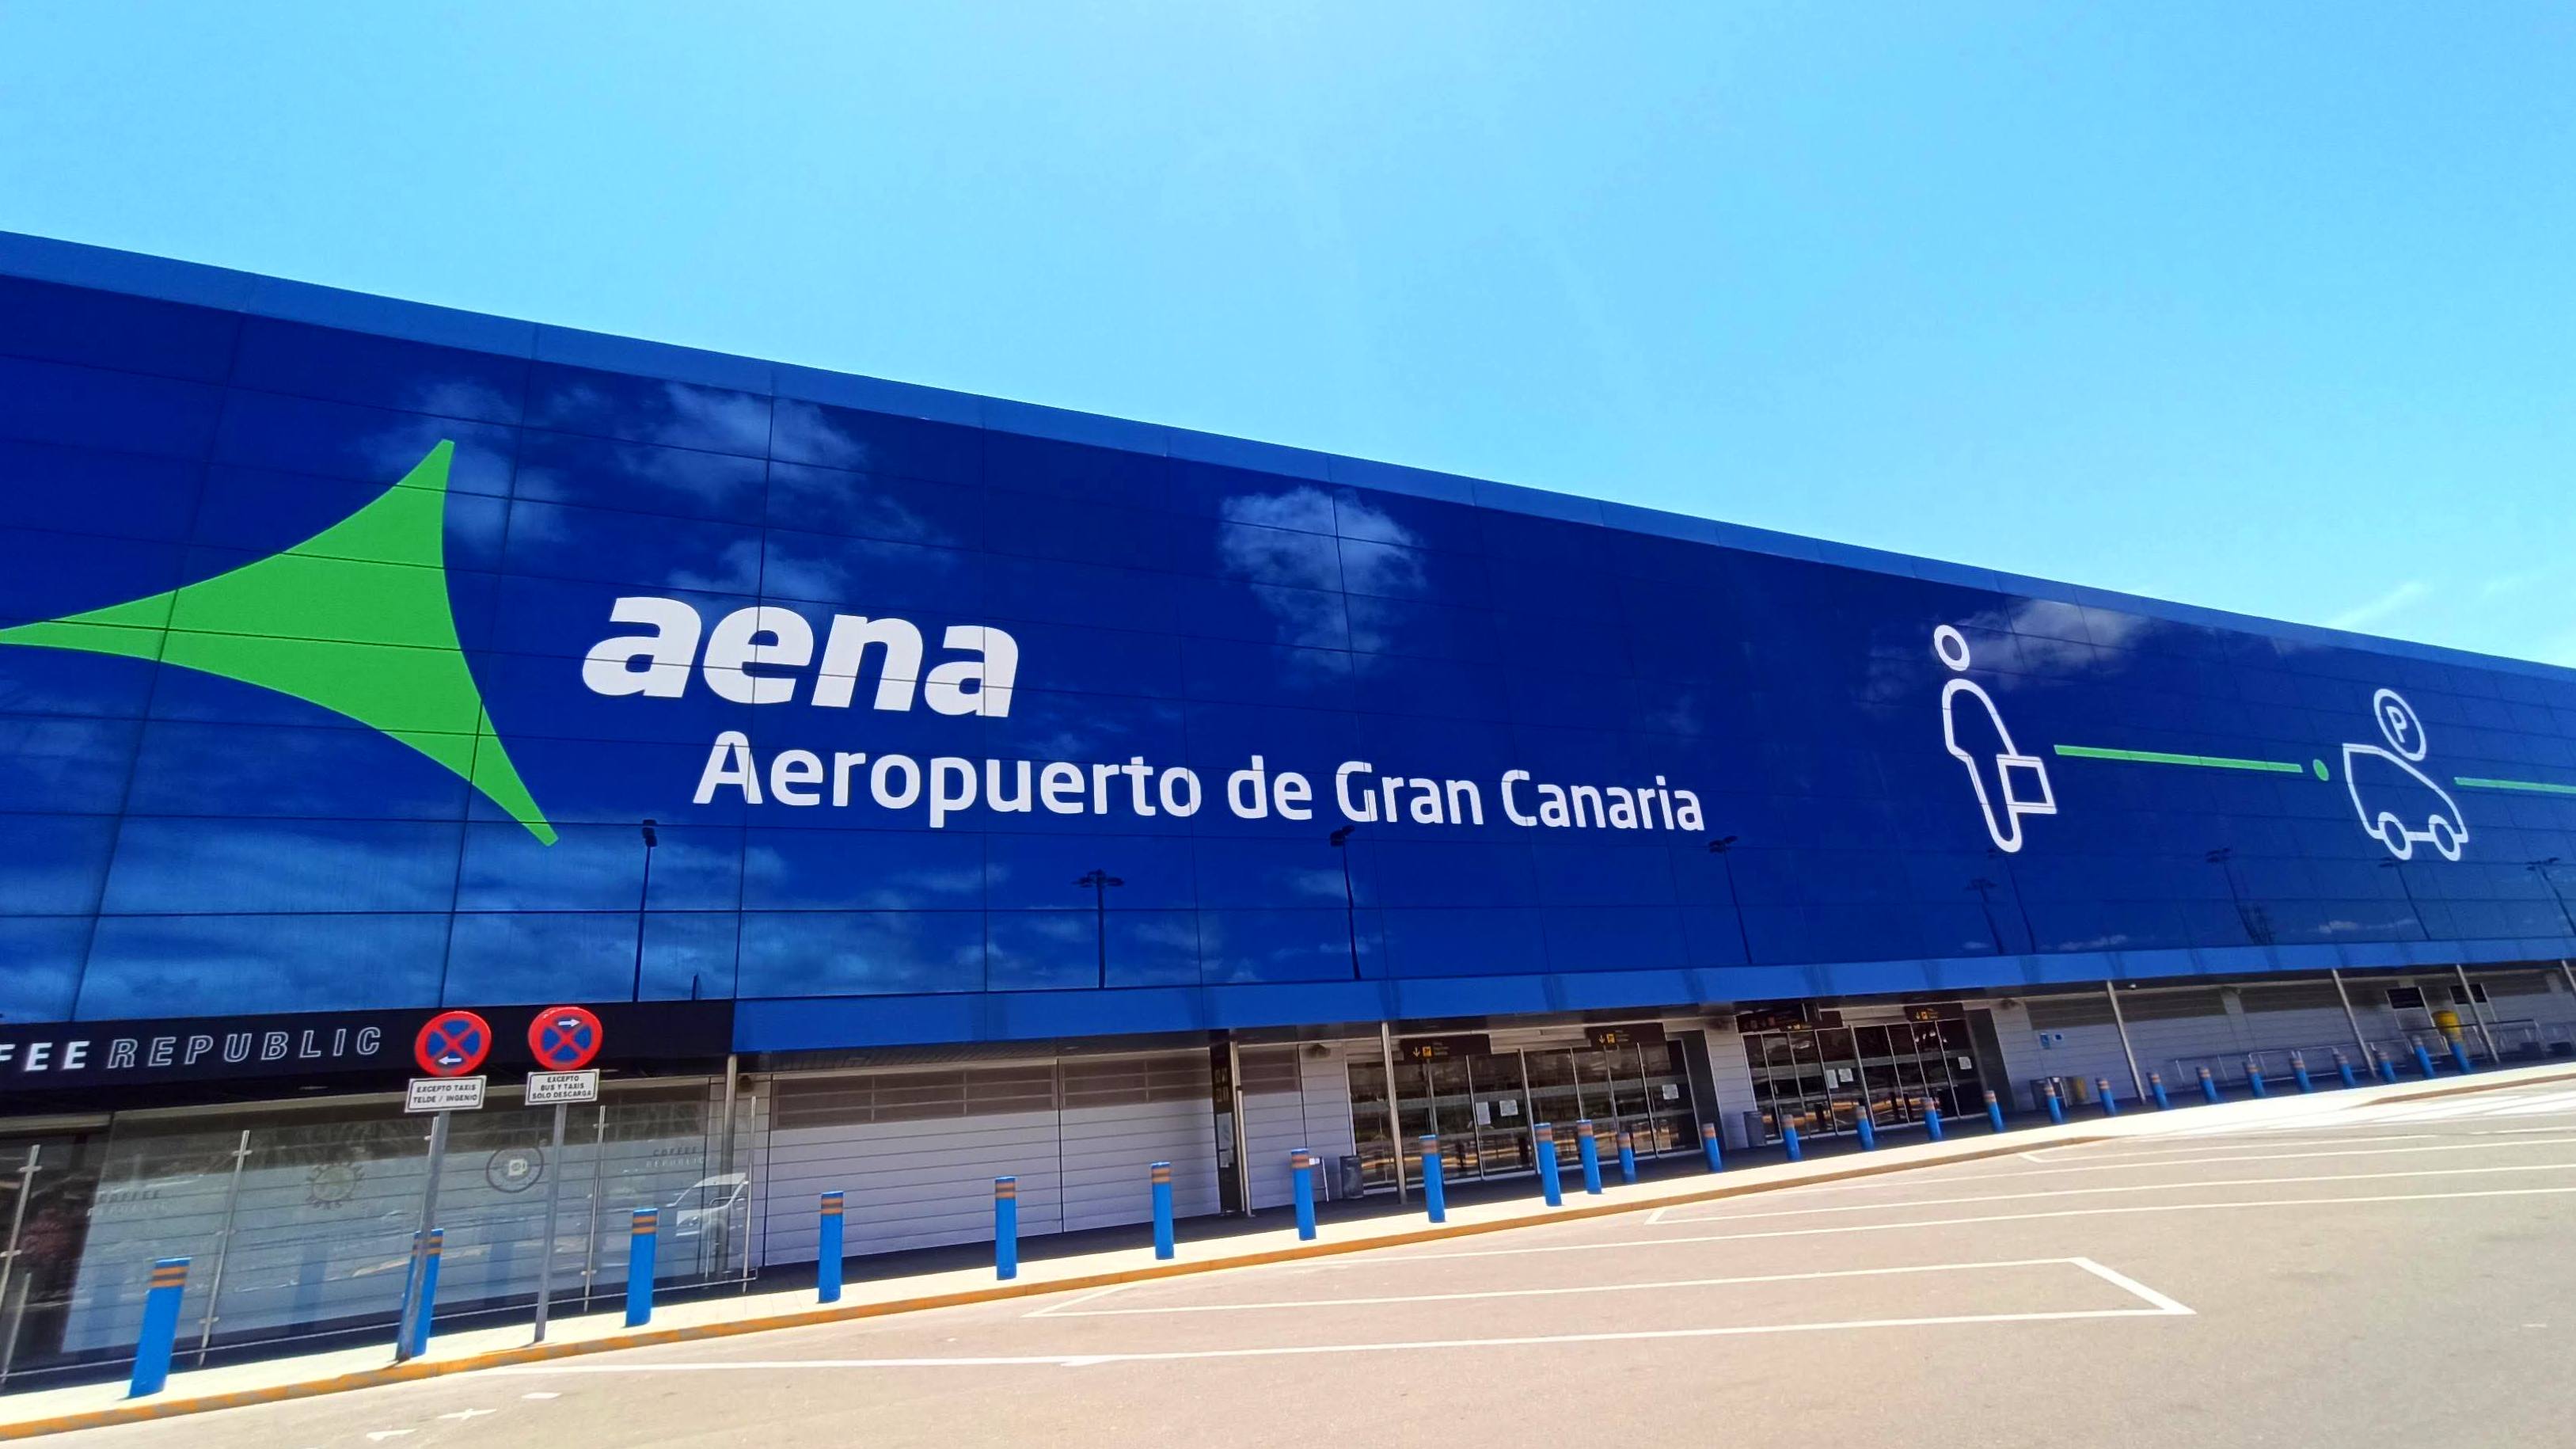 Aeropuerto de Gran Canaria taxi Las Palmas. Whatsapp +34699405886 www.taxilaspalmasdegrancanaria.es